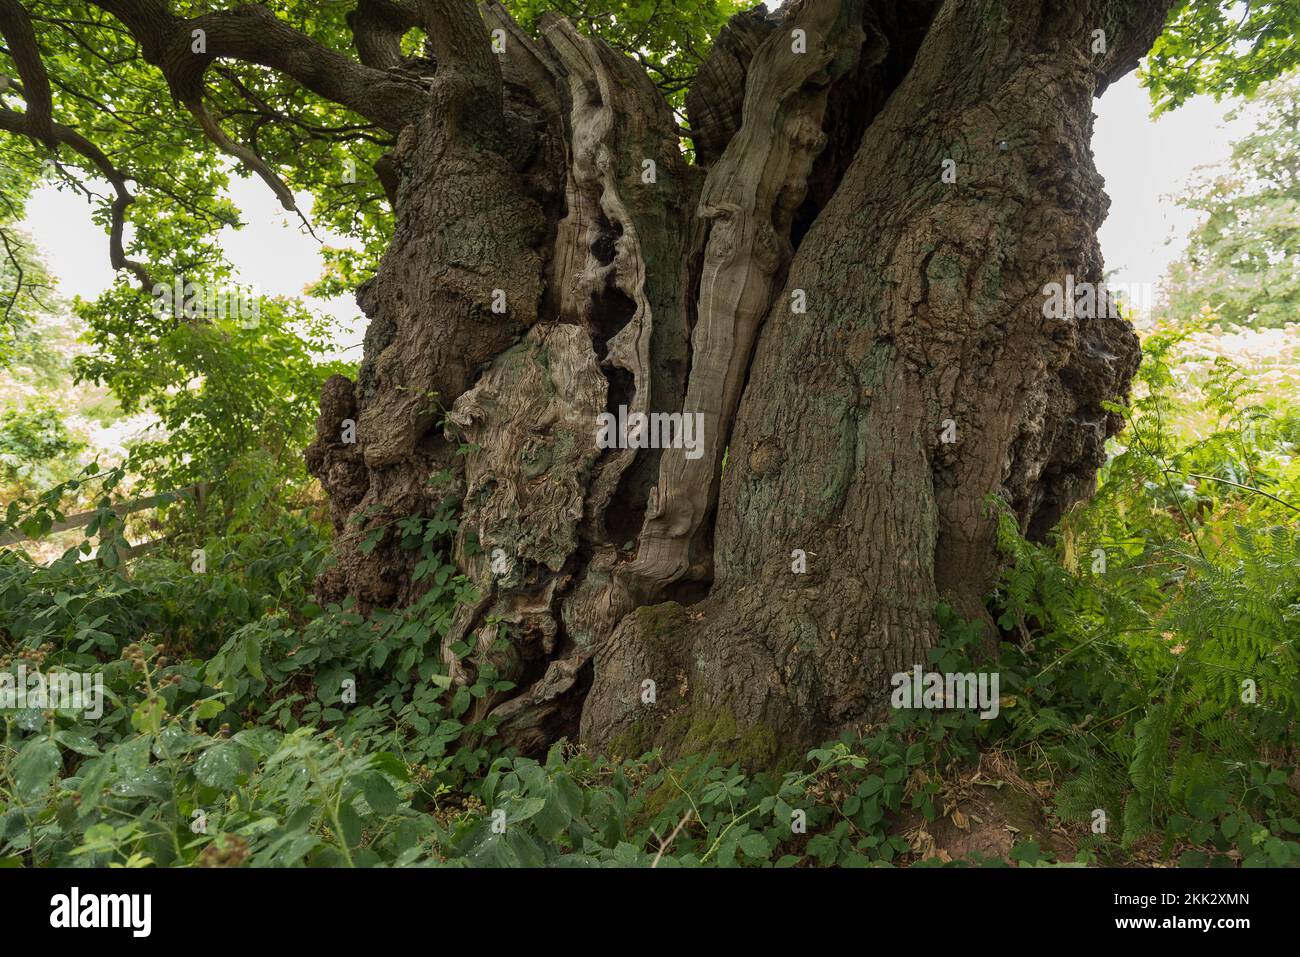 Chêne massif pollardé, Quercus robur, l'un des plus anciens d'Angleterre probablement plus de 800 ans isolé parmi les fougères et principalement entre les saumâtres Banque D'Images